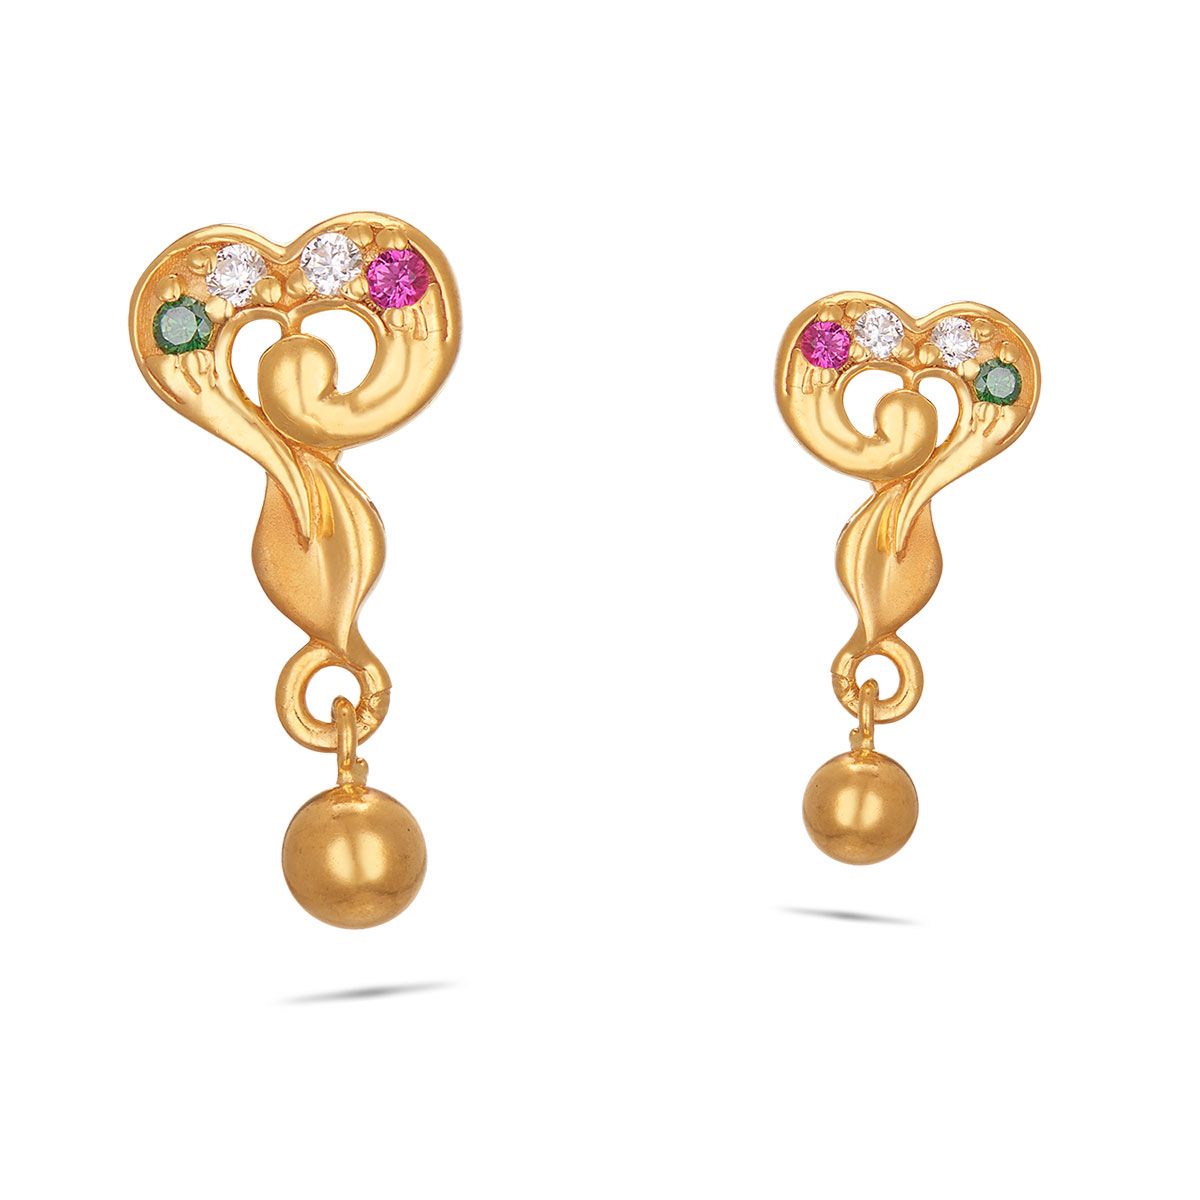 New model earrings for you